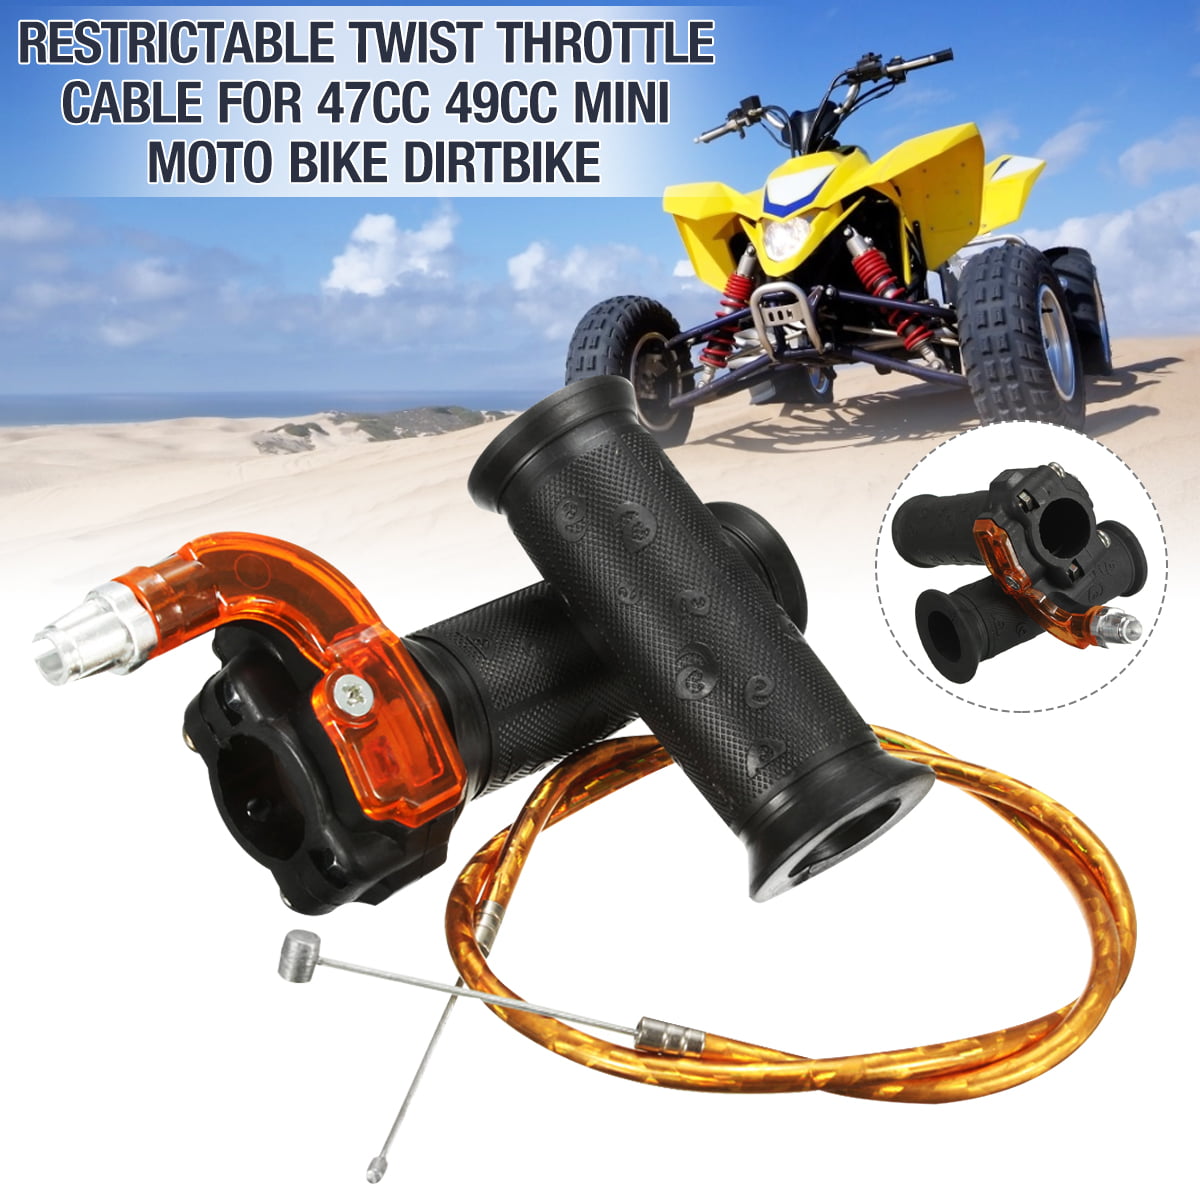 Restrictable Twist Throttle Hand Grip Cable Set For 47cc 49cc Mini Moto Pit 